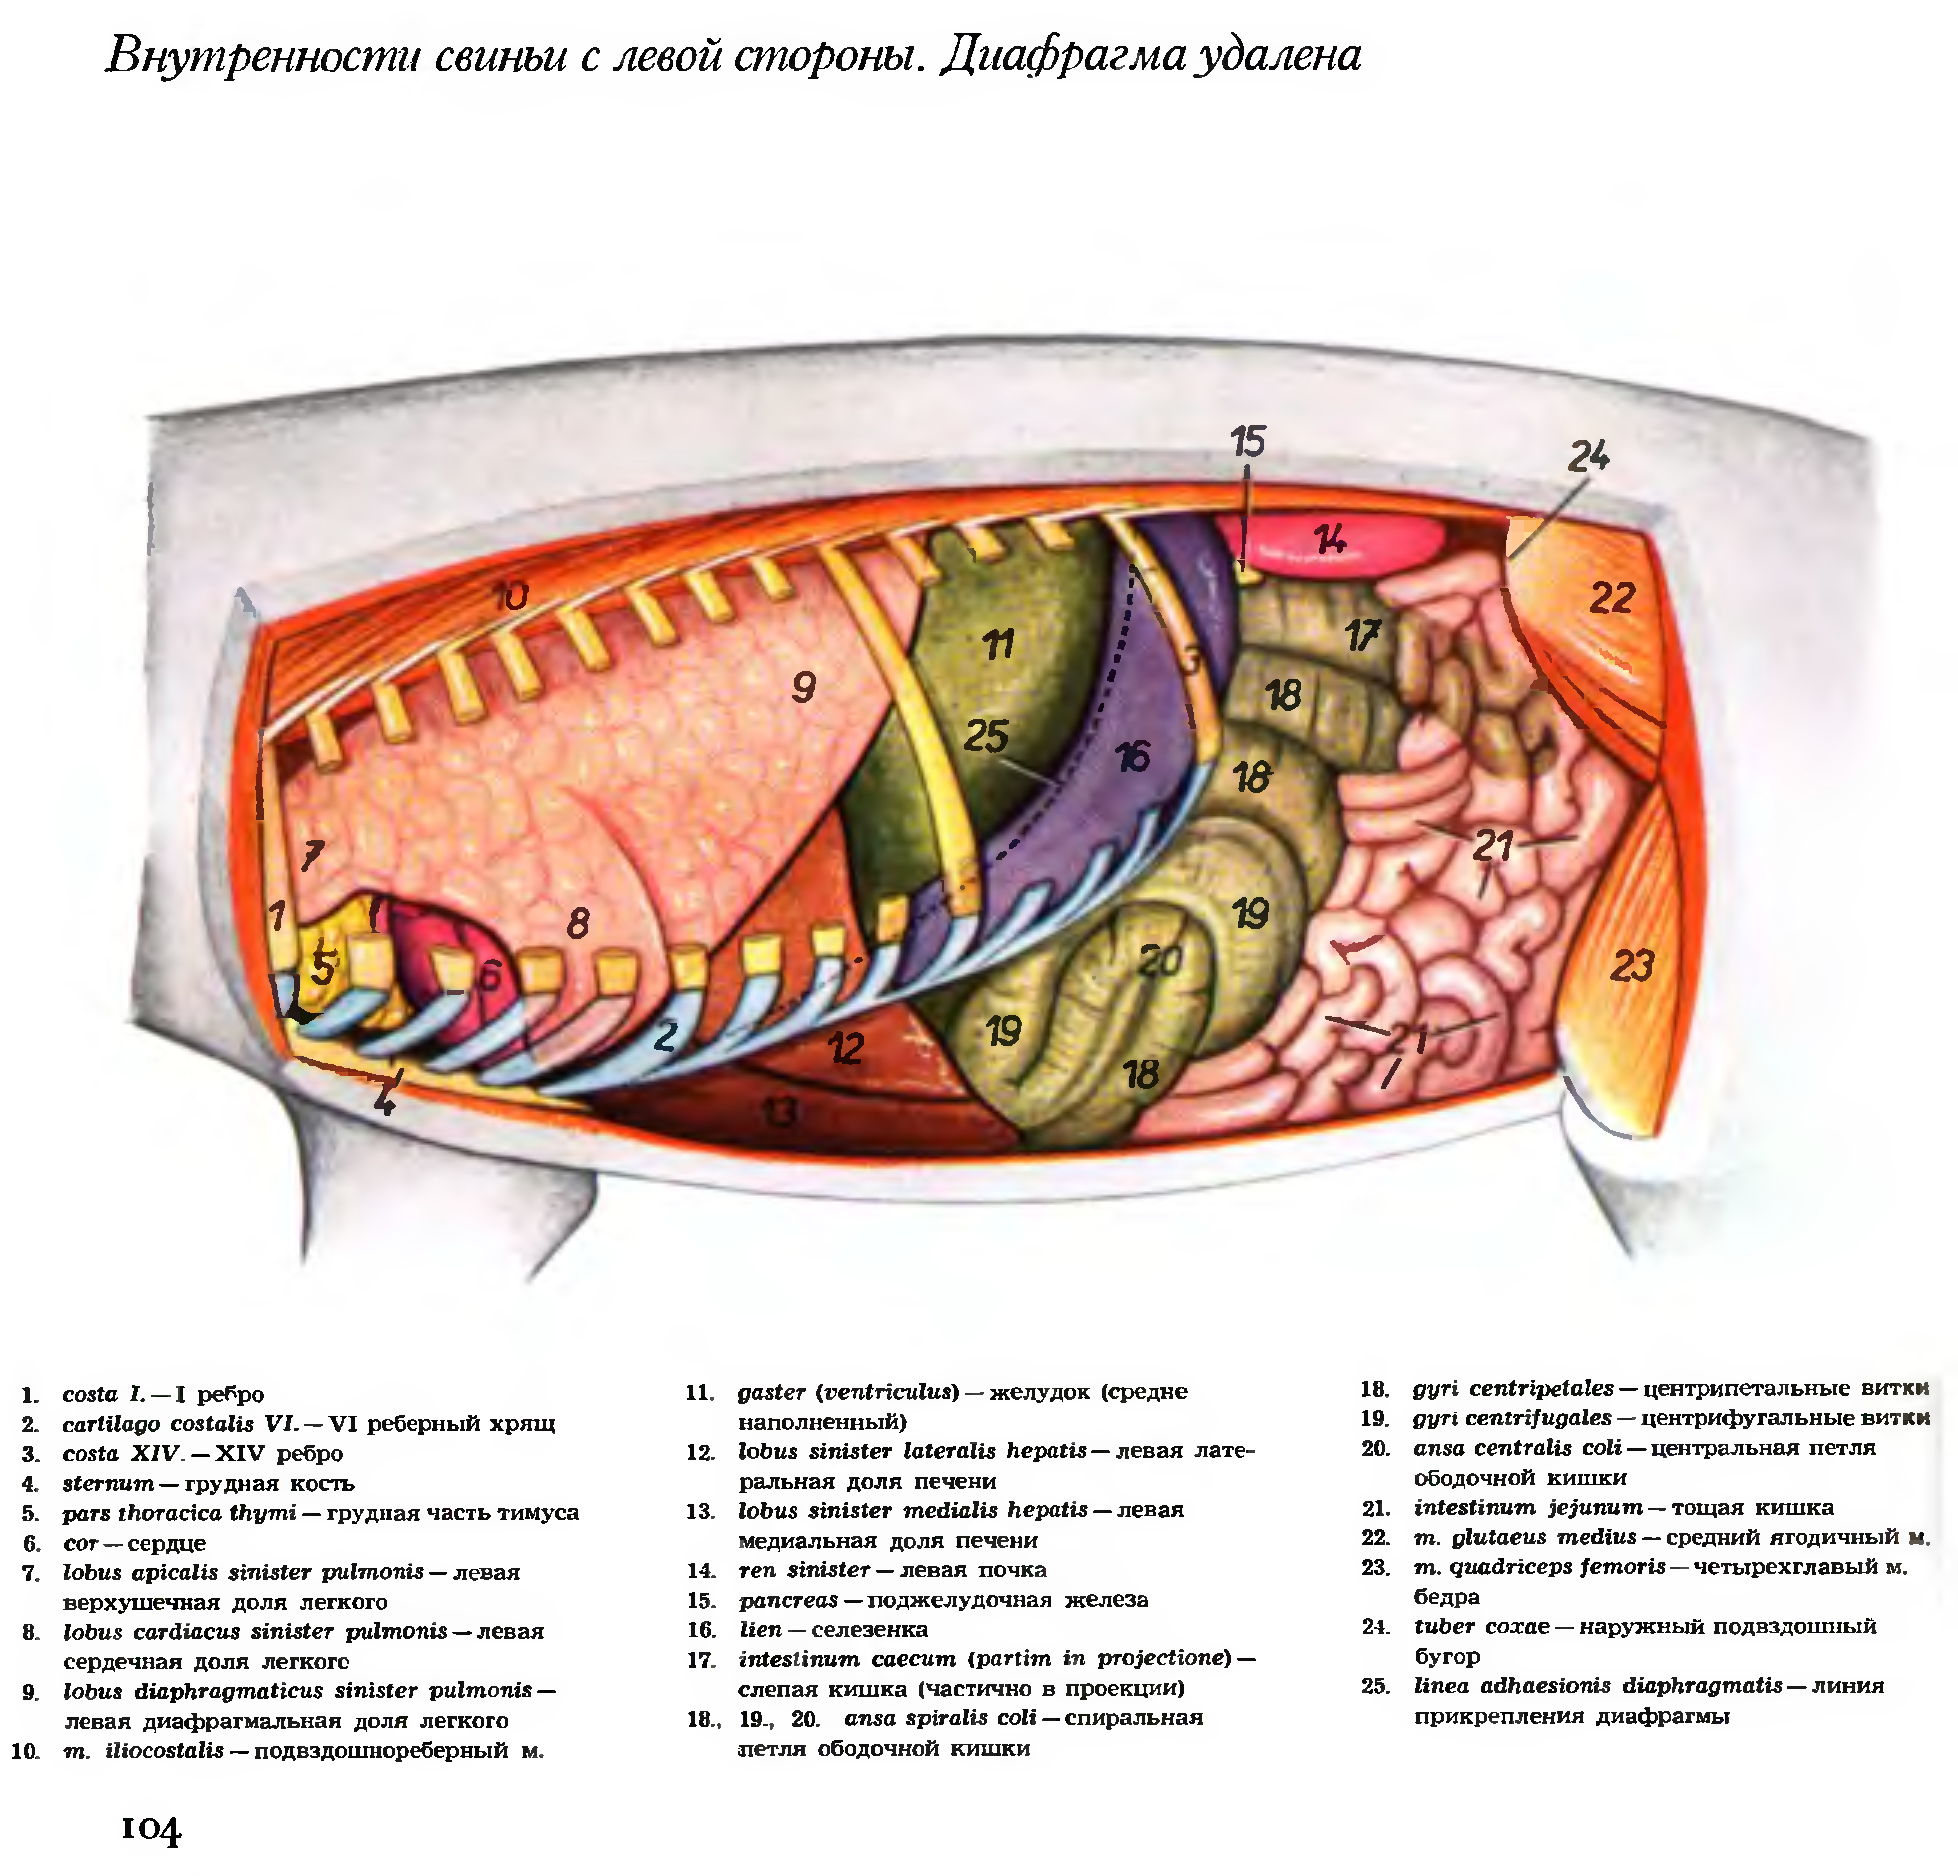 Поджелудочная железа свиньи. Топография органов брюшной полости у свиньи. Топография органов свиньи. Топография внутренних органов с левой стороны свиньи. Топография внутренних органов свиньи с правой стороны.